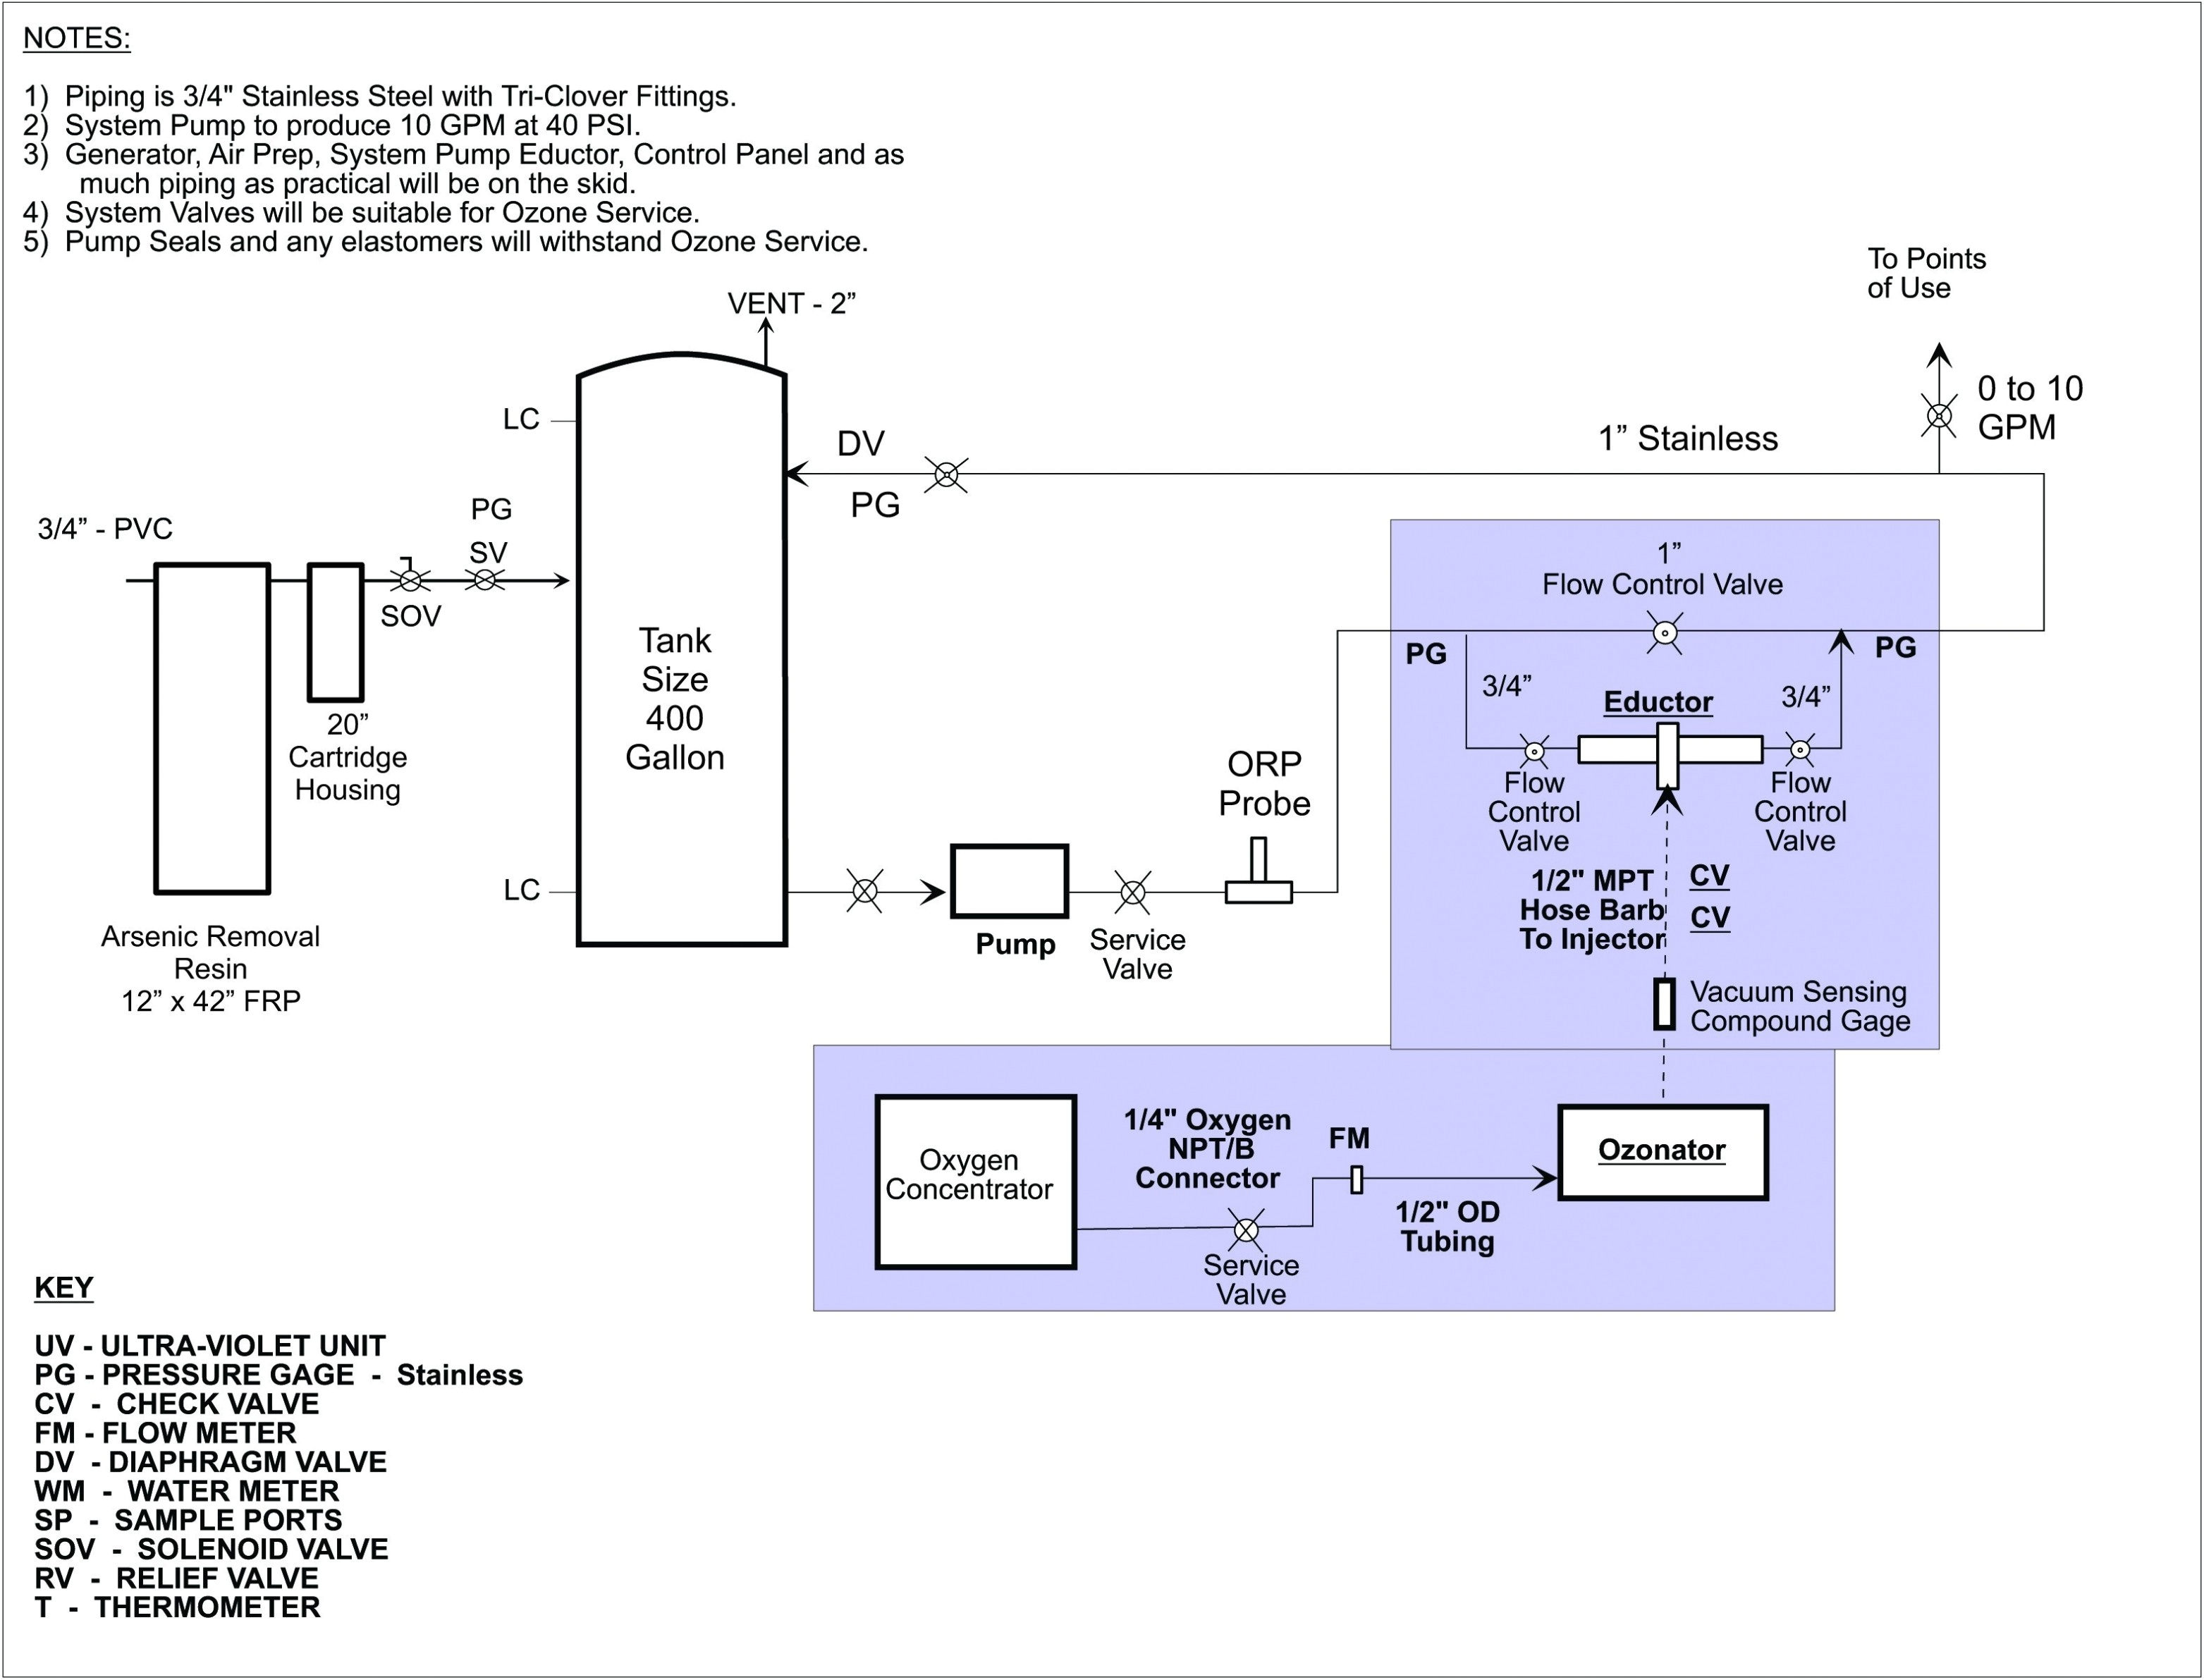 coleman generator wiring diagram wiring diagram databasepowermate wiring diagram wiring diagram coleman generator wiring diagram